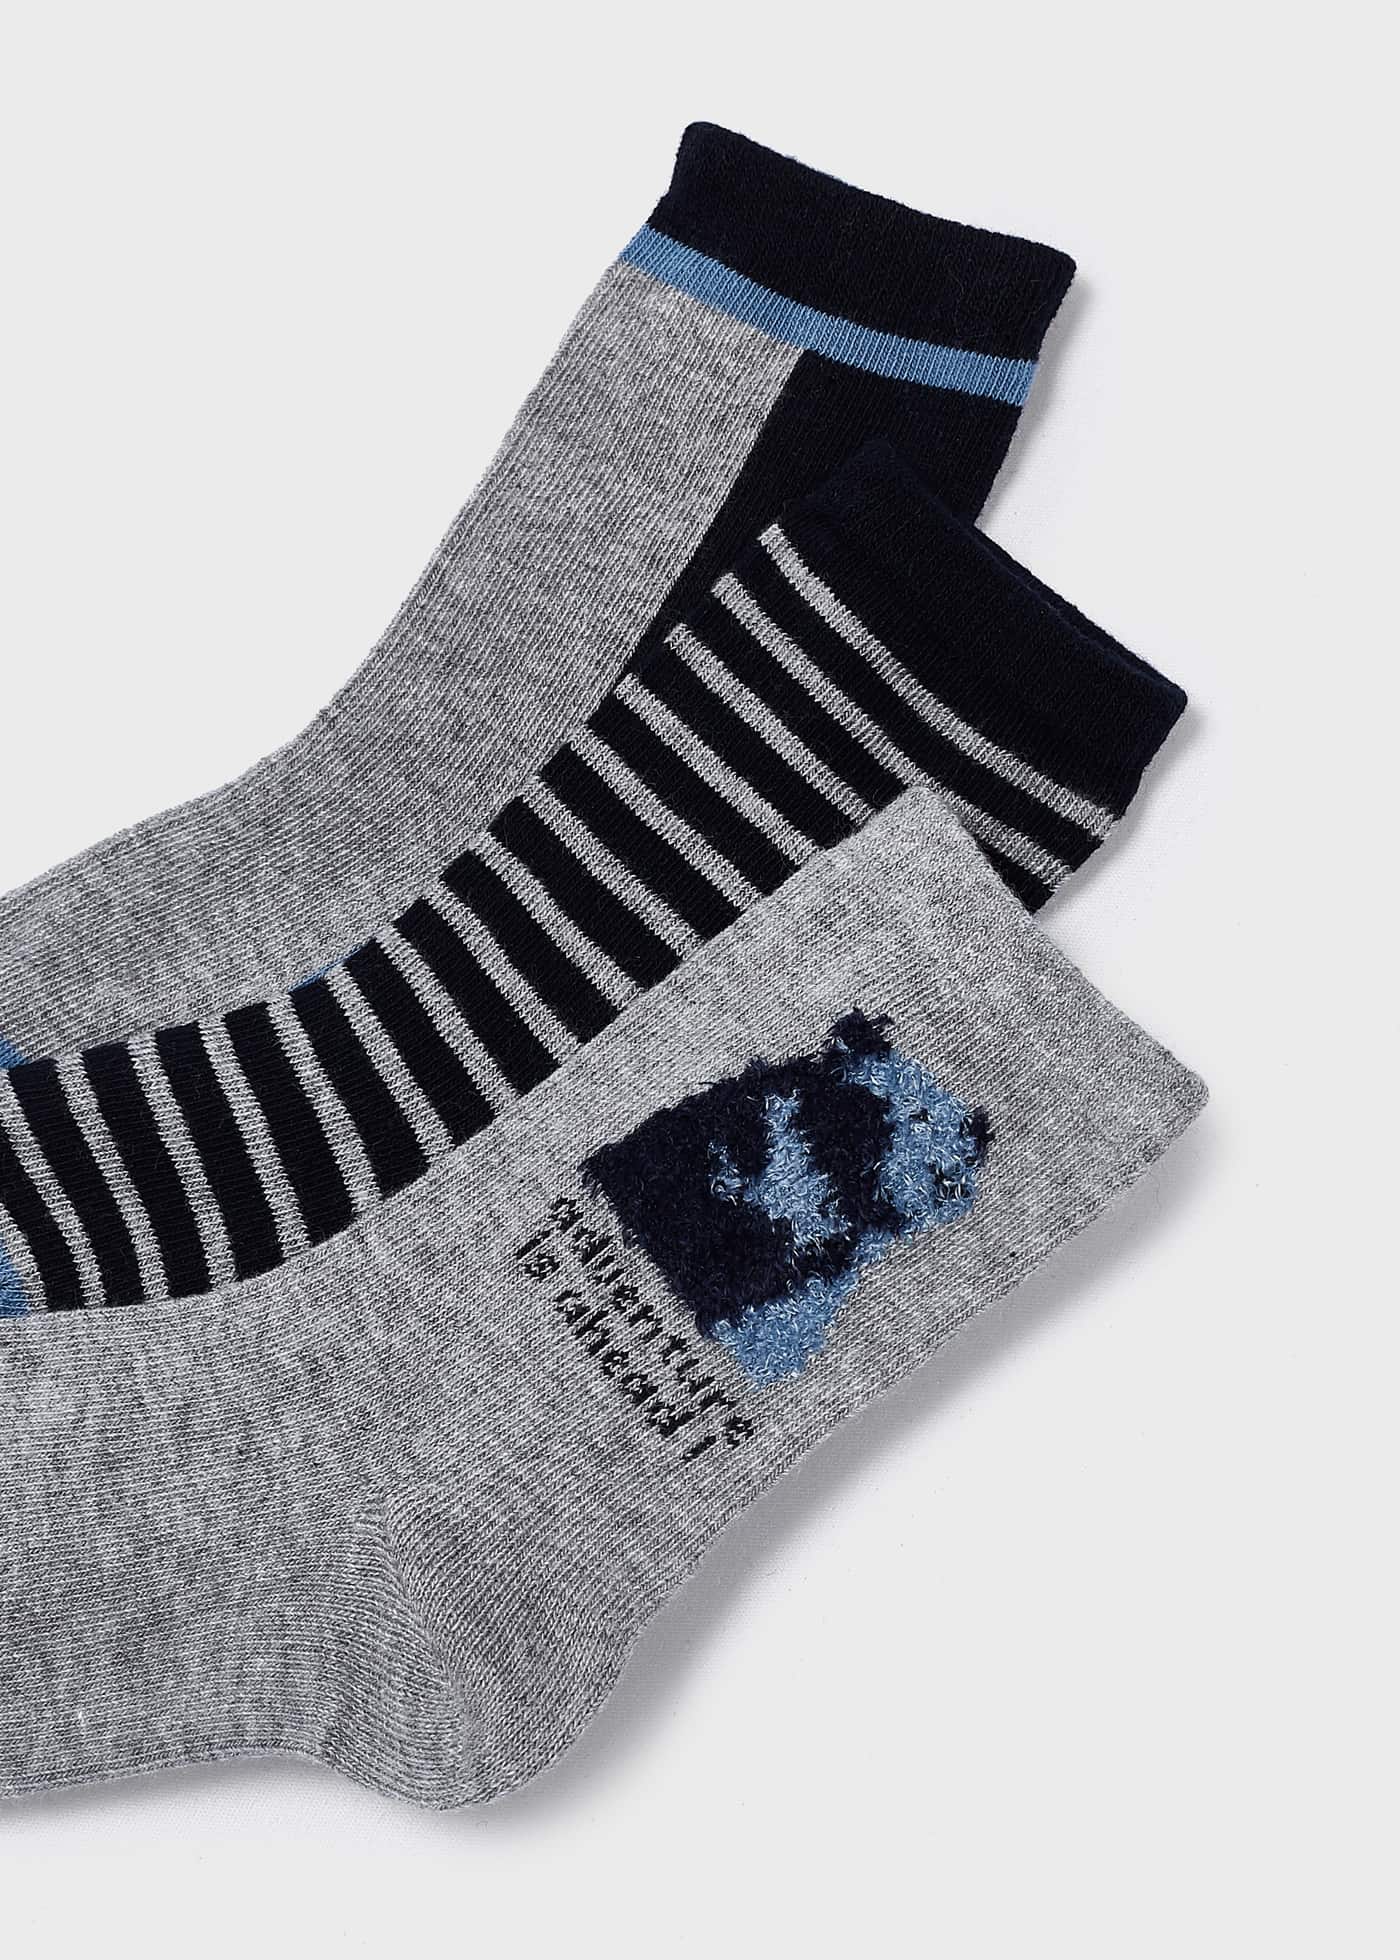 Комплект 3 чифта чорапи от органичен памук за момче